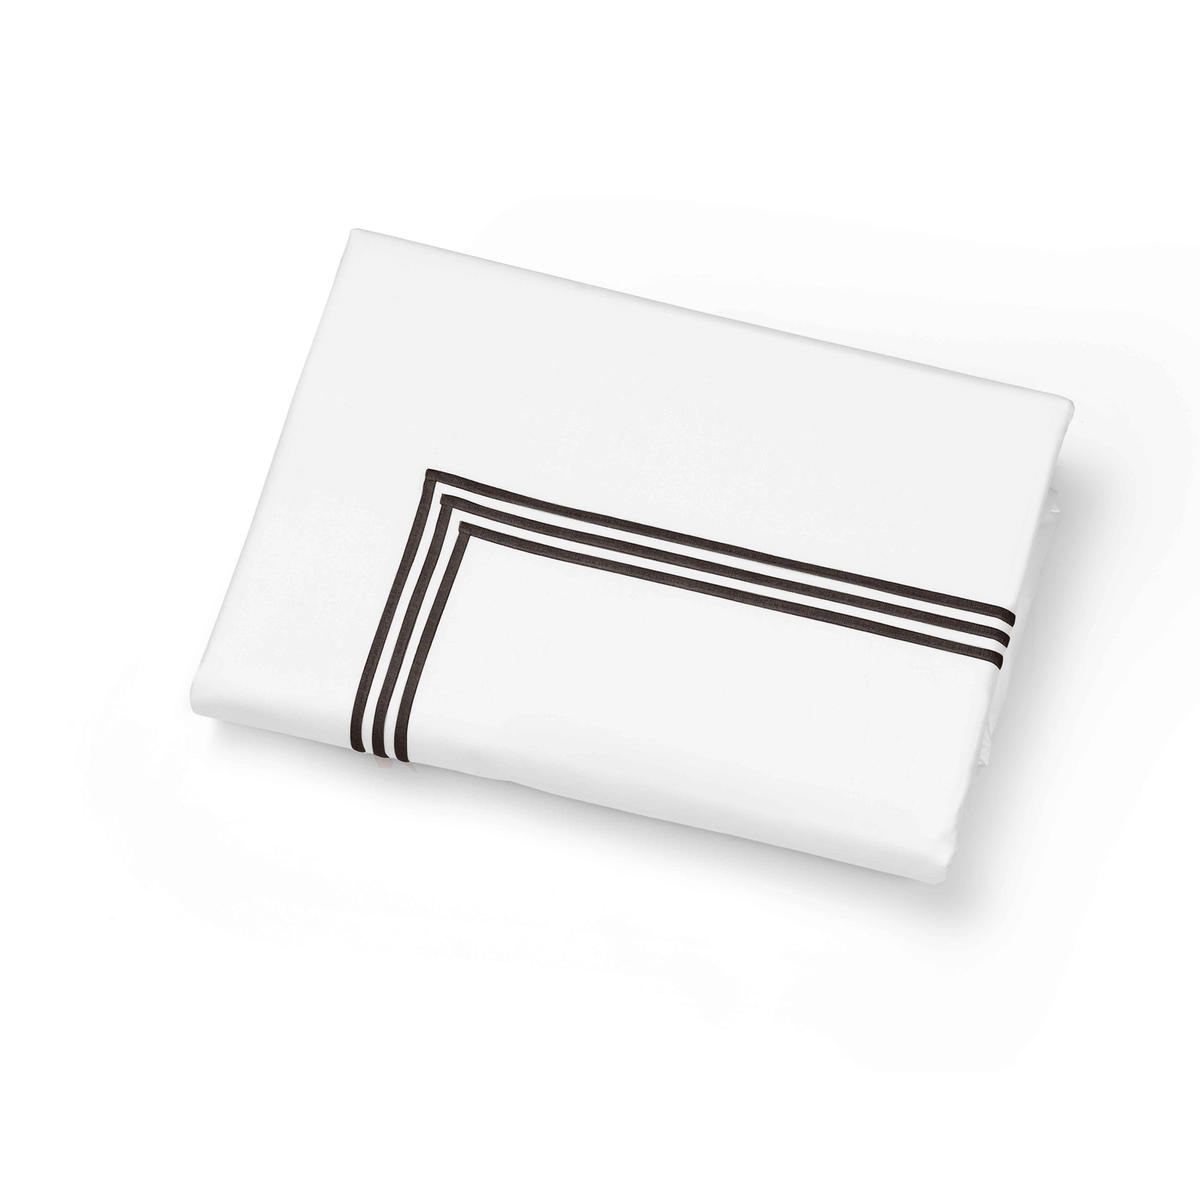 Folded Duvet Cover of Signoria Platinum Percale Bedding in White/Espresso Color